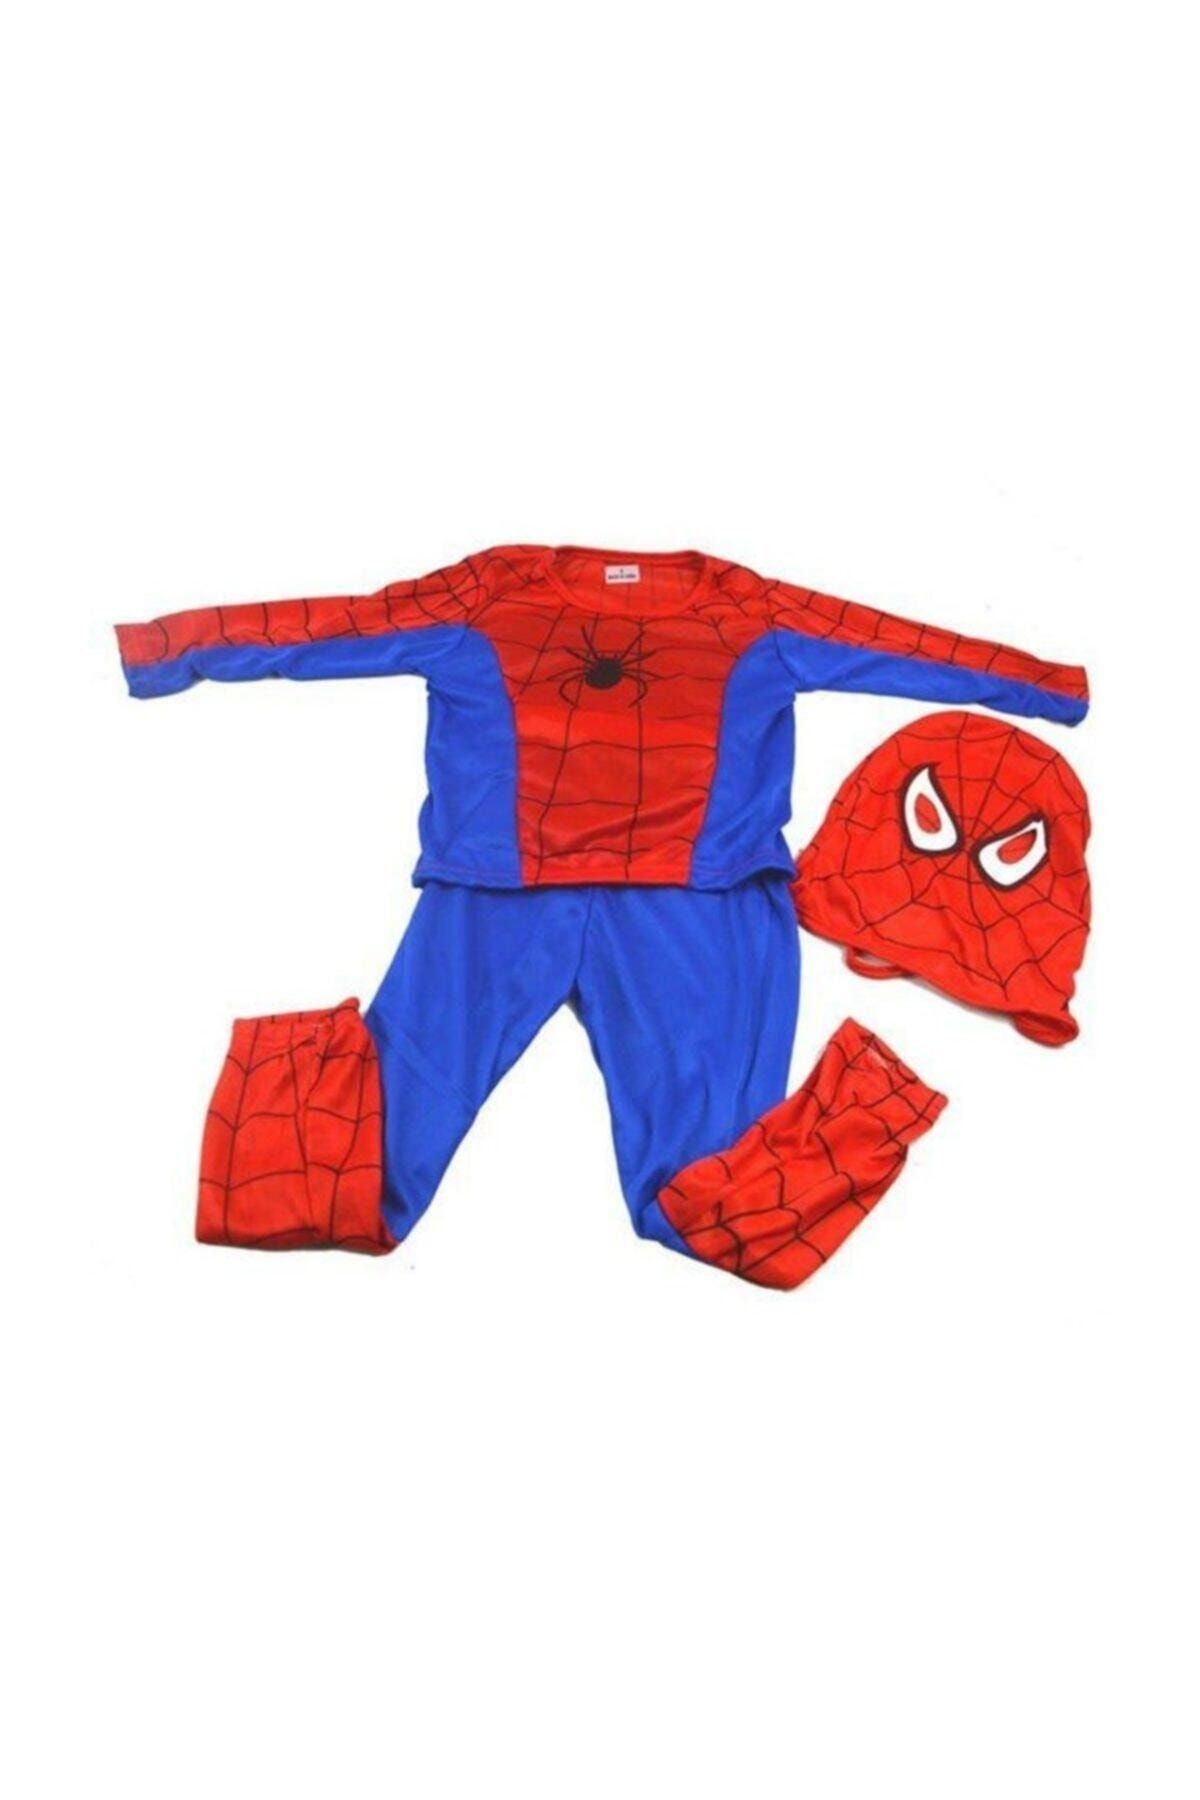 Evistro Spiderman Örümcek Adam Çocuk Kostümü M Beden 5-7 Yaş